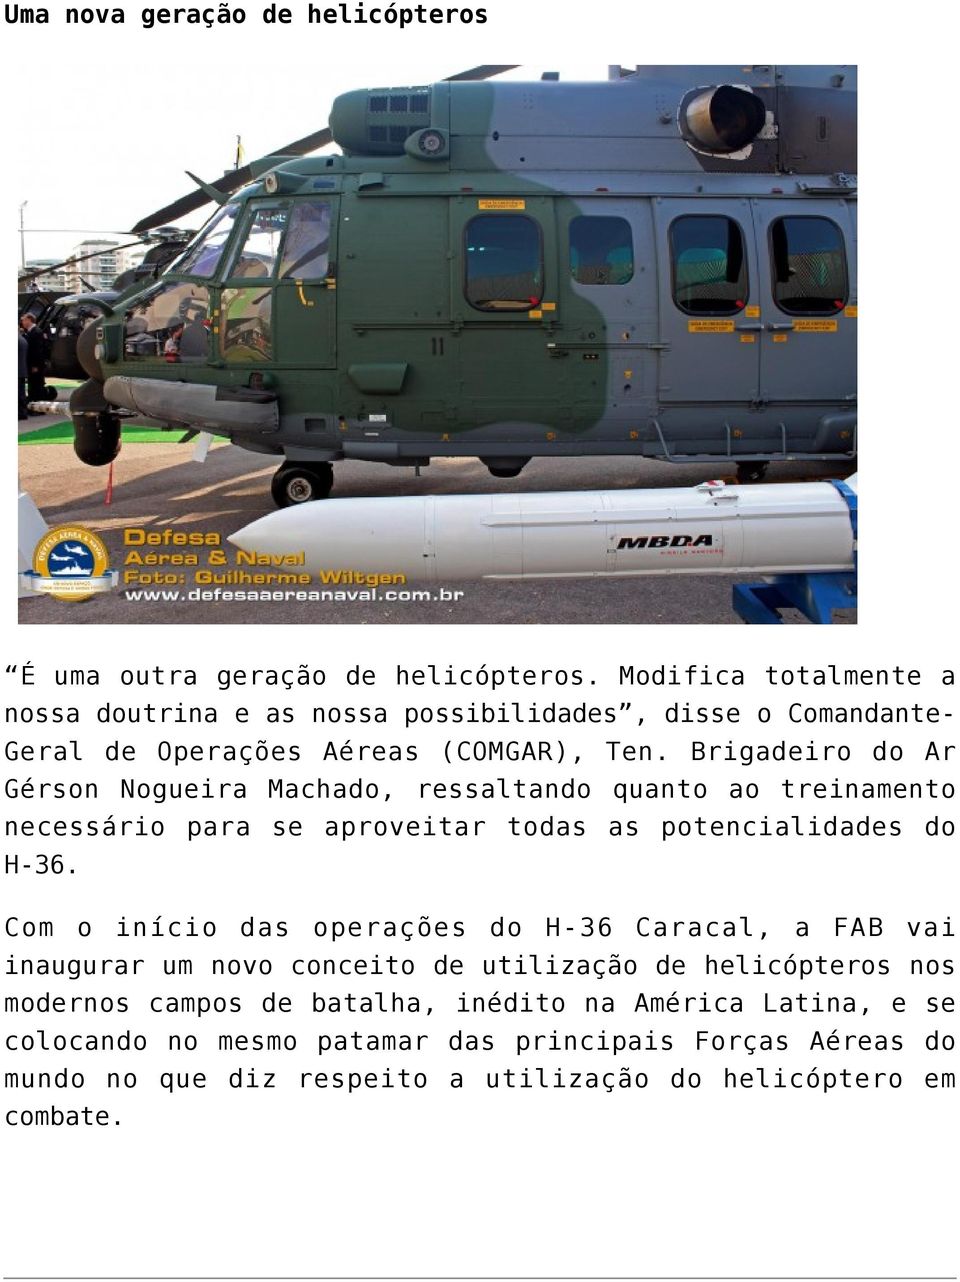 Brigadeiro do Ar Gérson Nogueira Machado, ressaltando quanto ao treinamento necessário para se aproveitar todas as potencialidades do H-36.